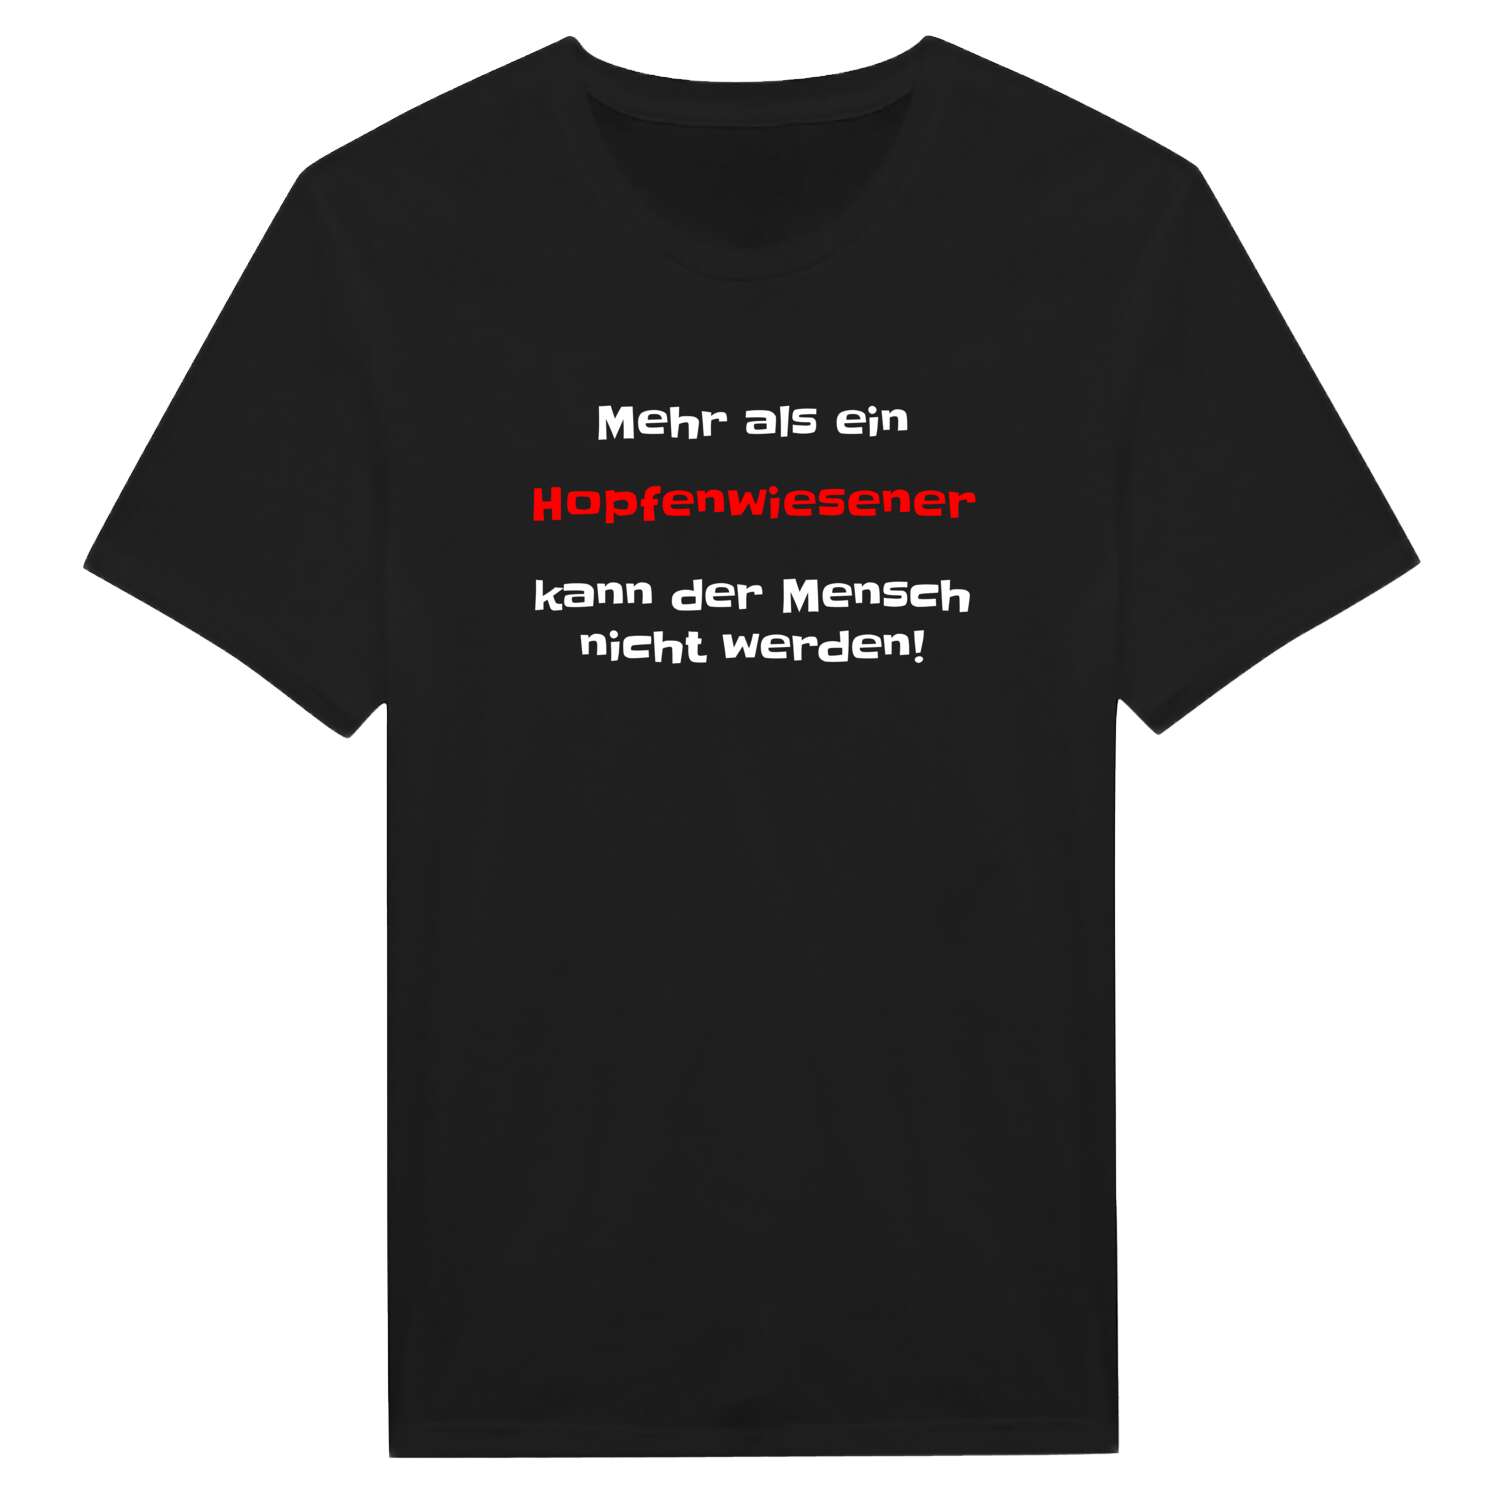 Hopfenwiesen T-Shirt »Mehr als ein«